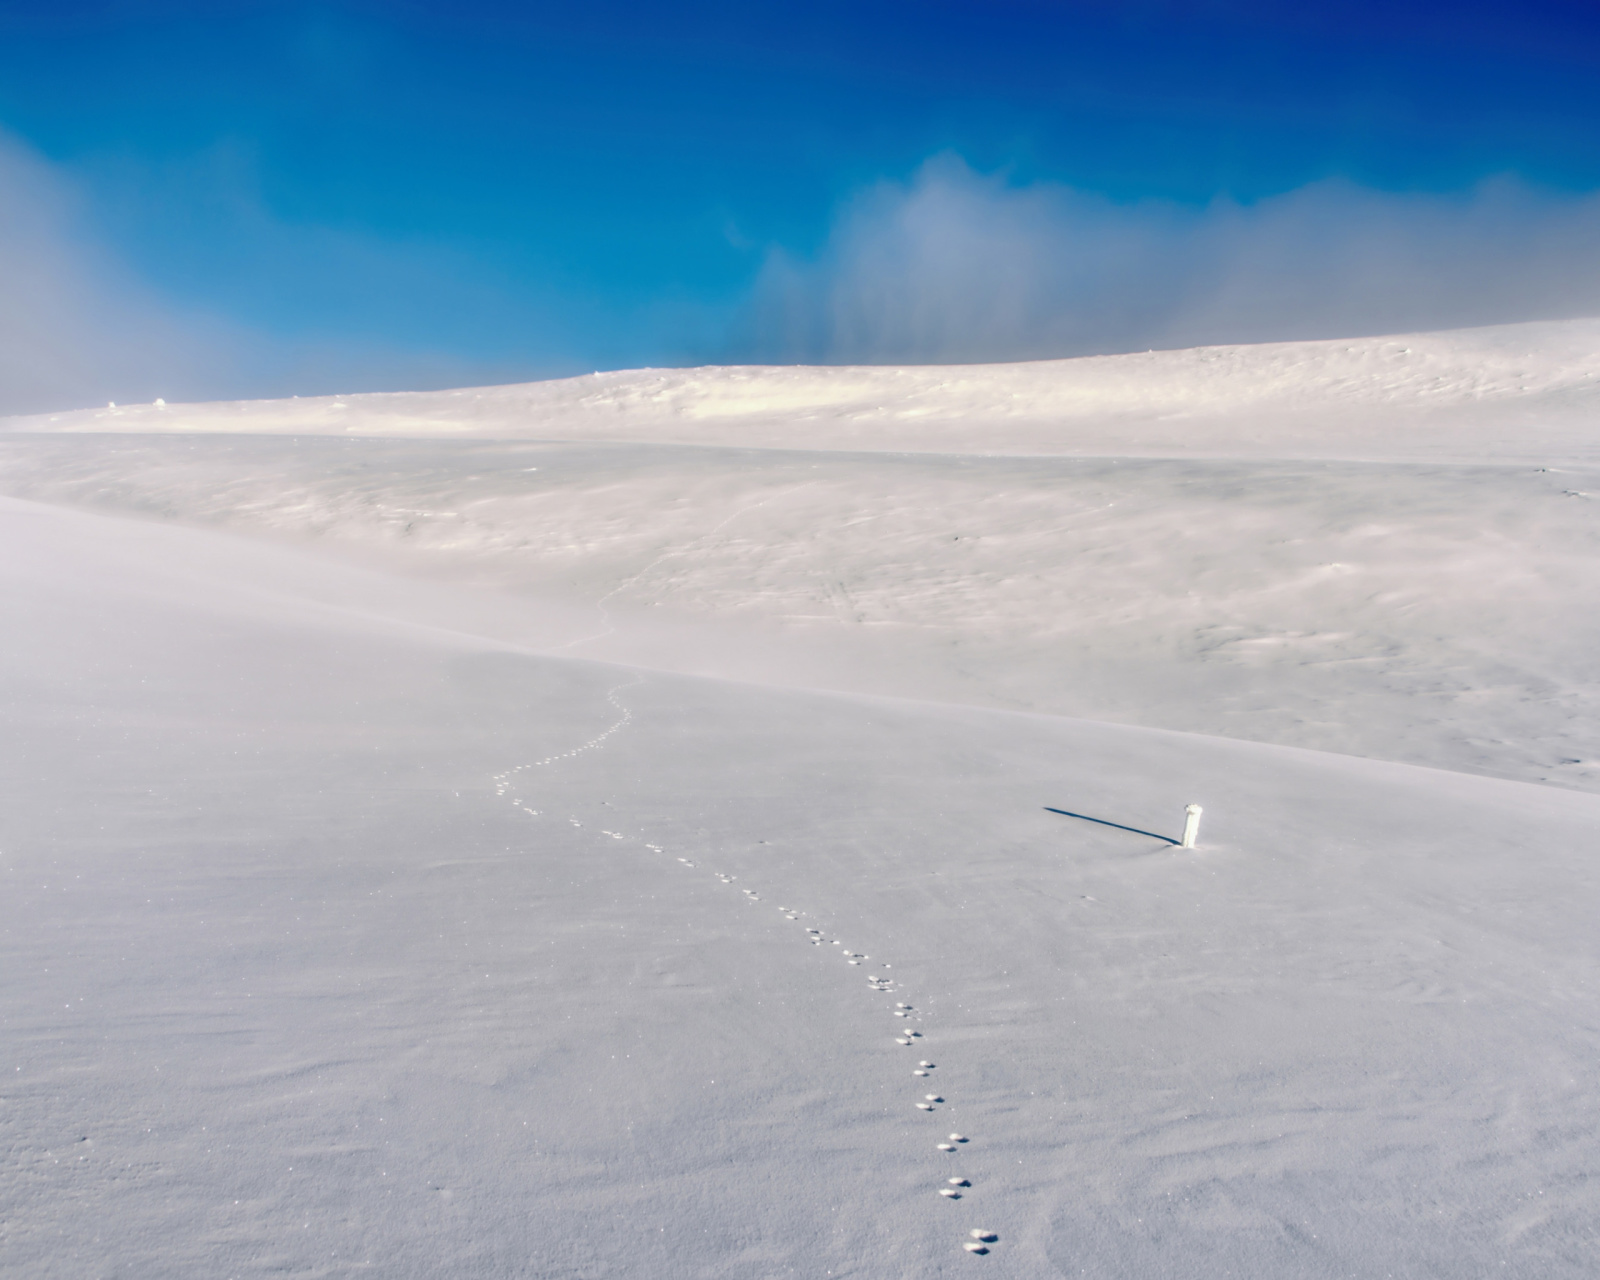 Footprints on snow field screenshot #1 1600x1280